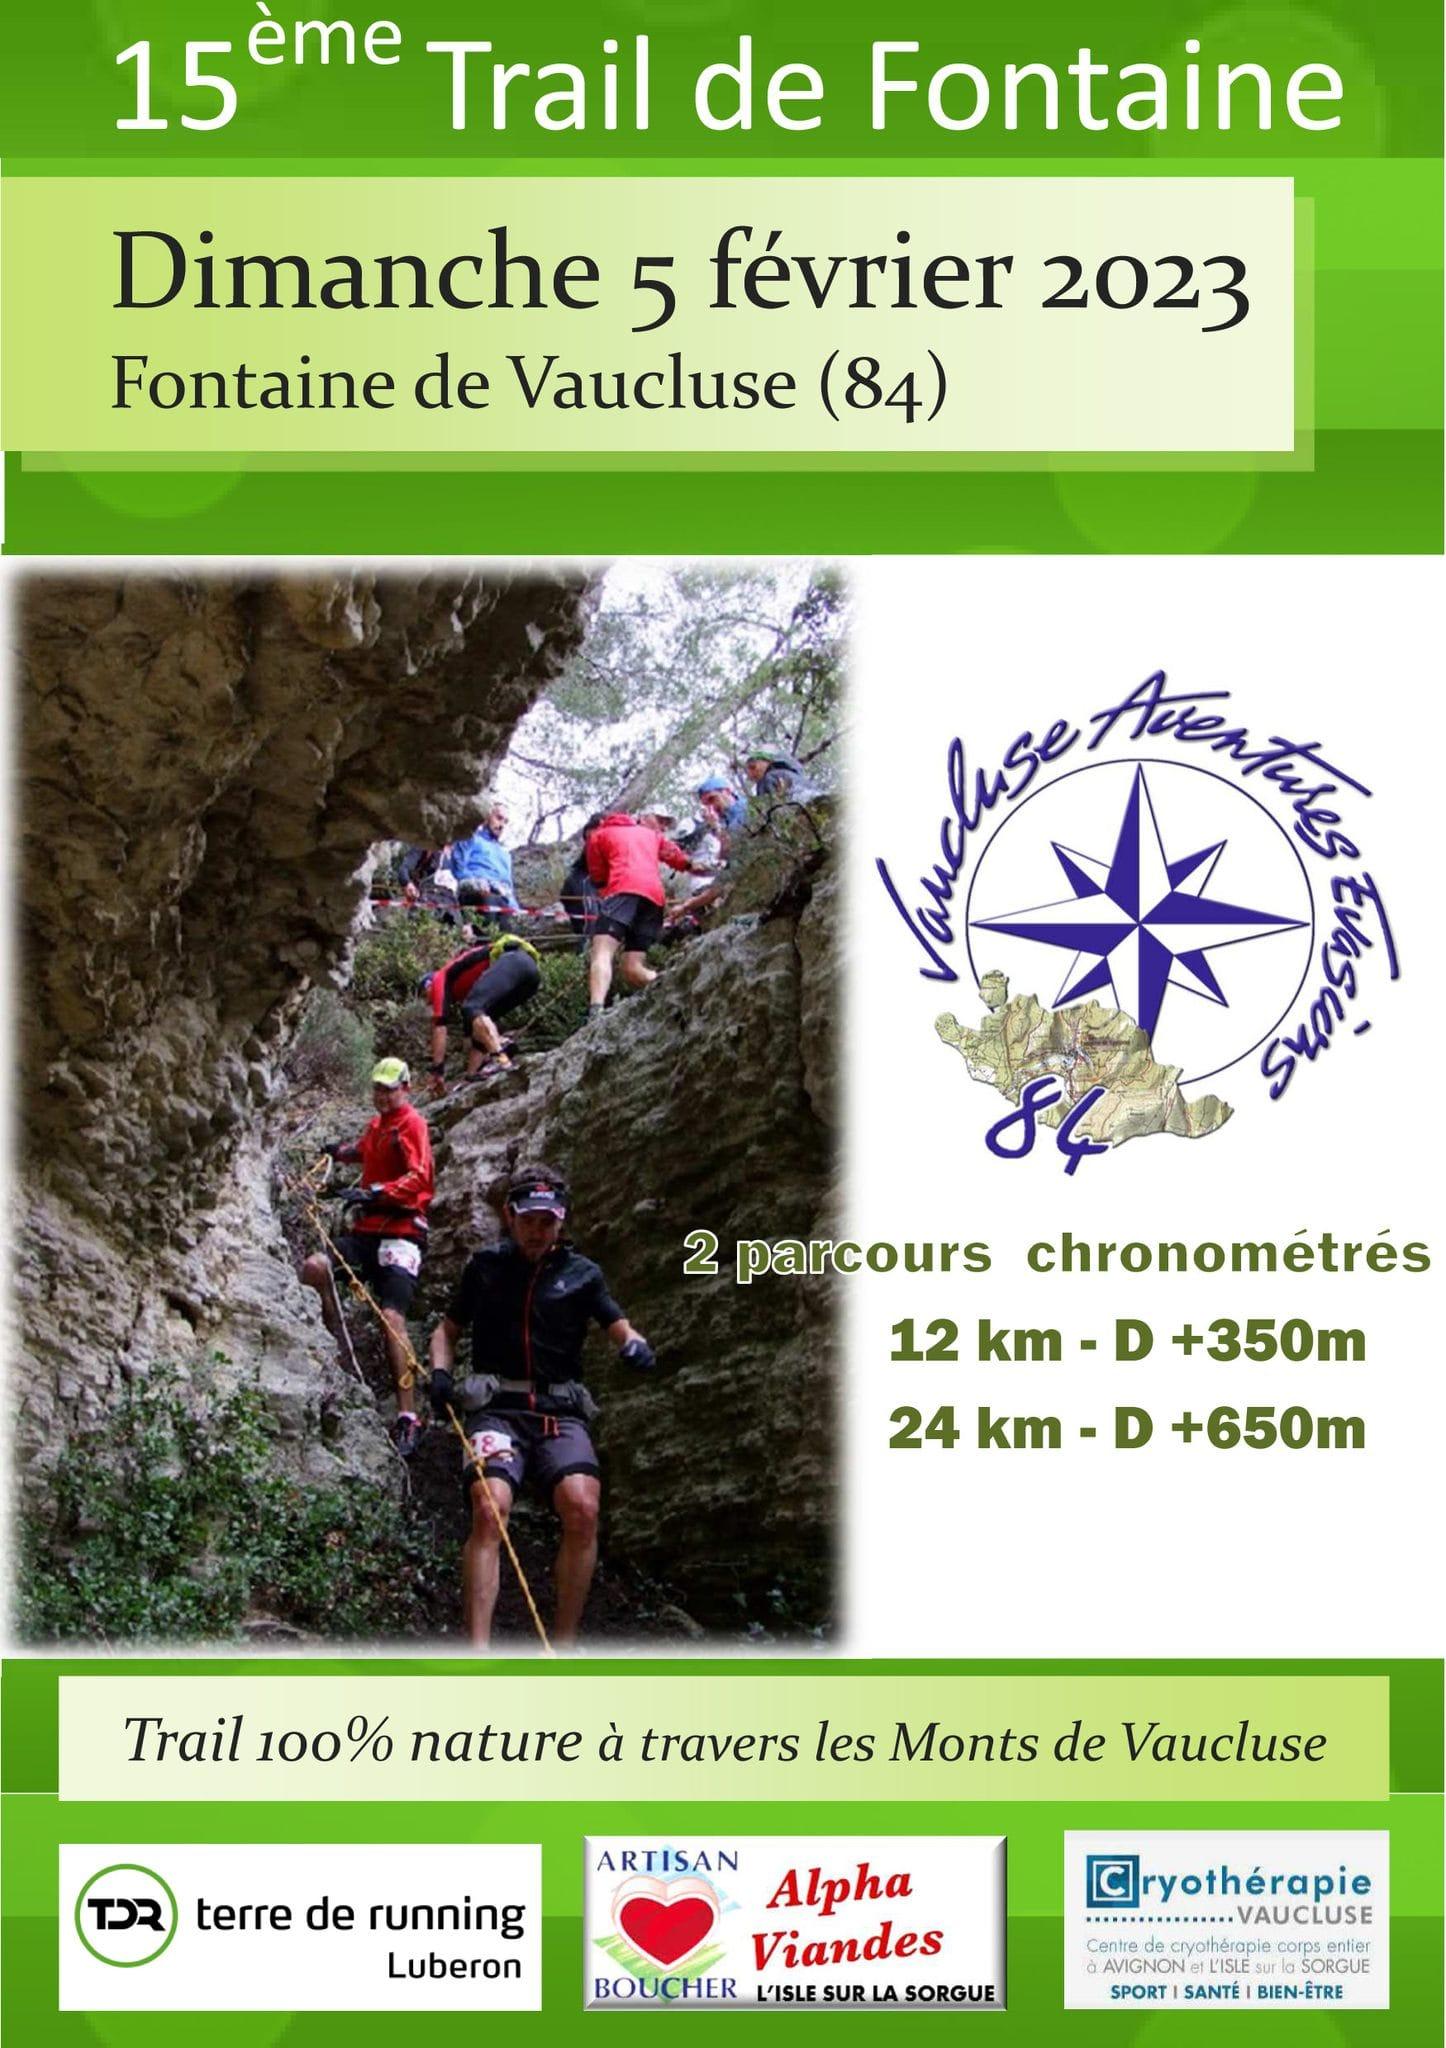 Affiche Trail de Fontaine de Vaucluse 2023